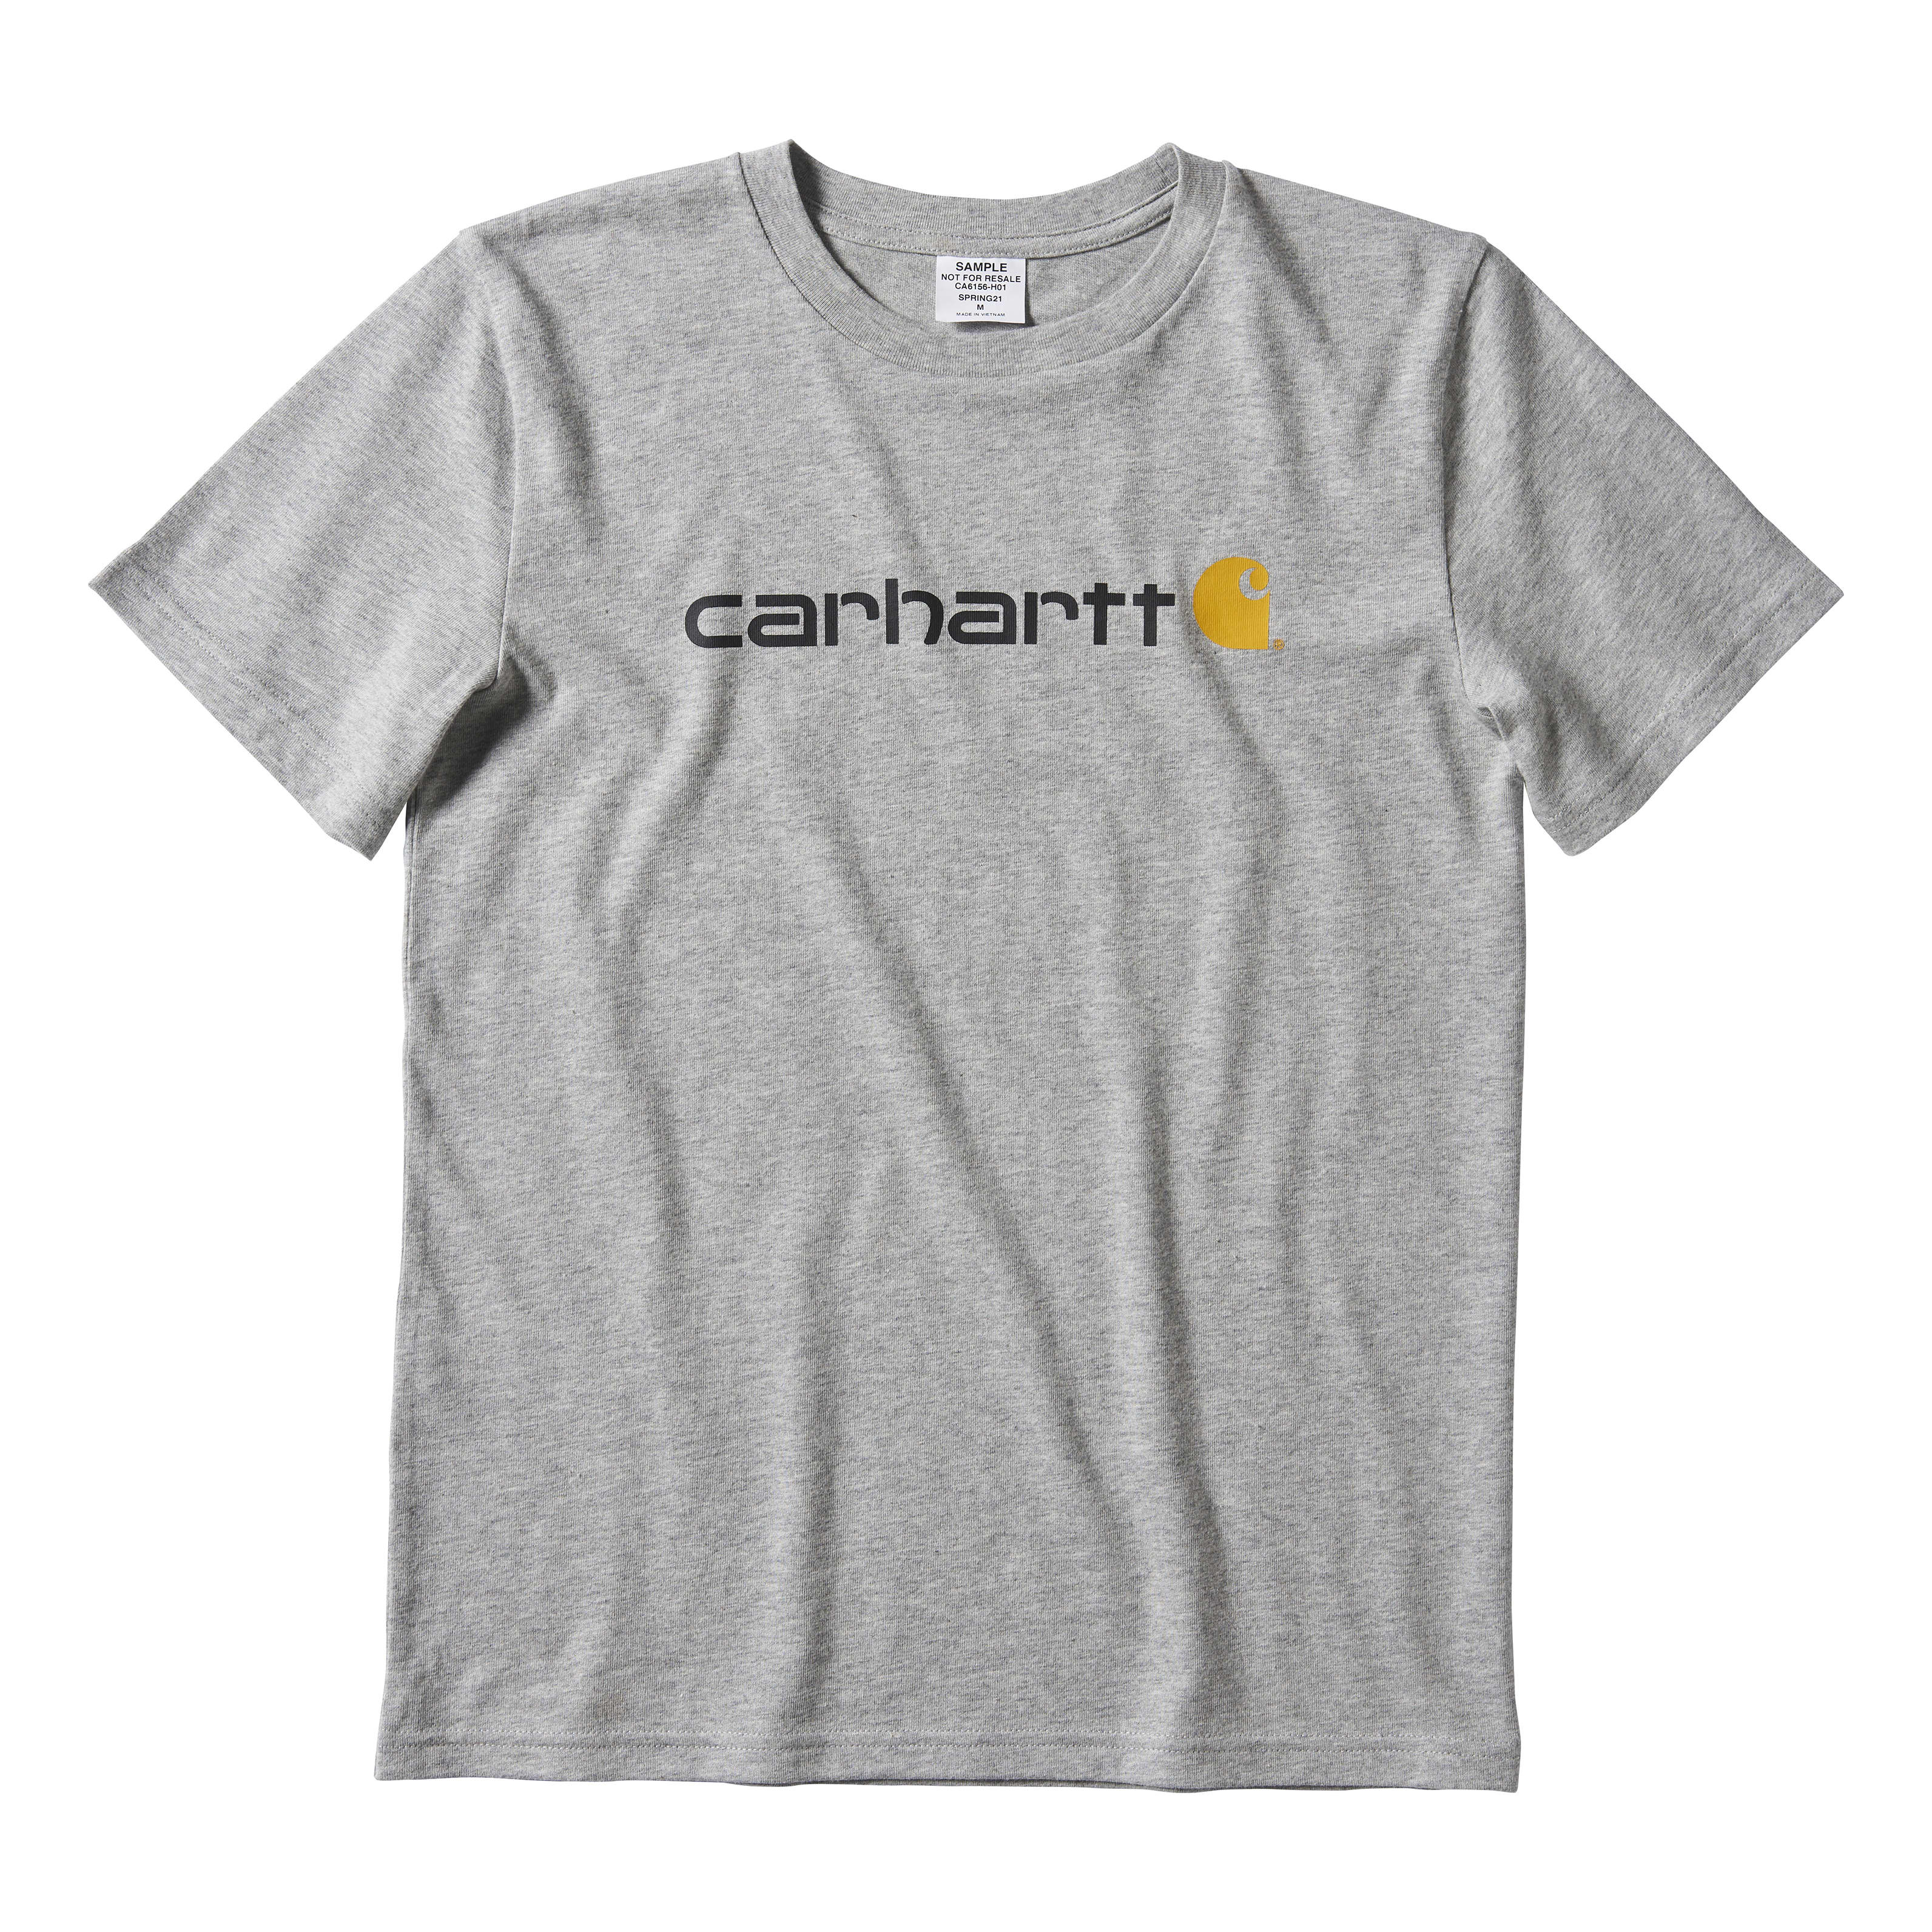 Carhartt - Crewneck Logo T-shirt 4-7 - Grey - 6